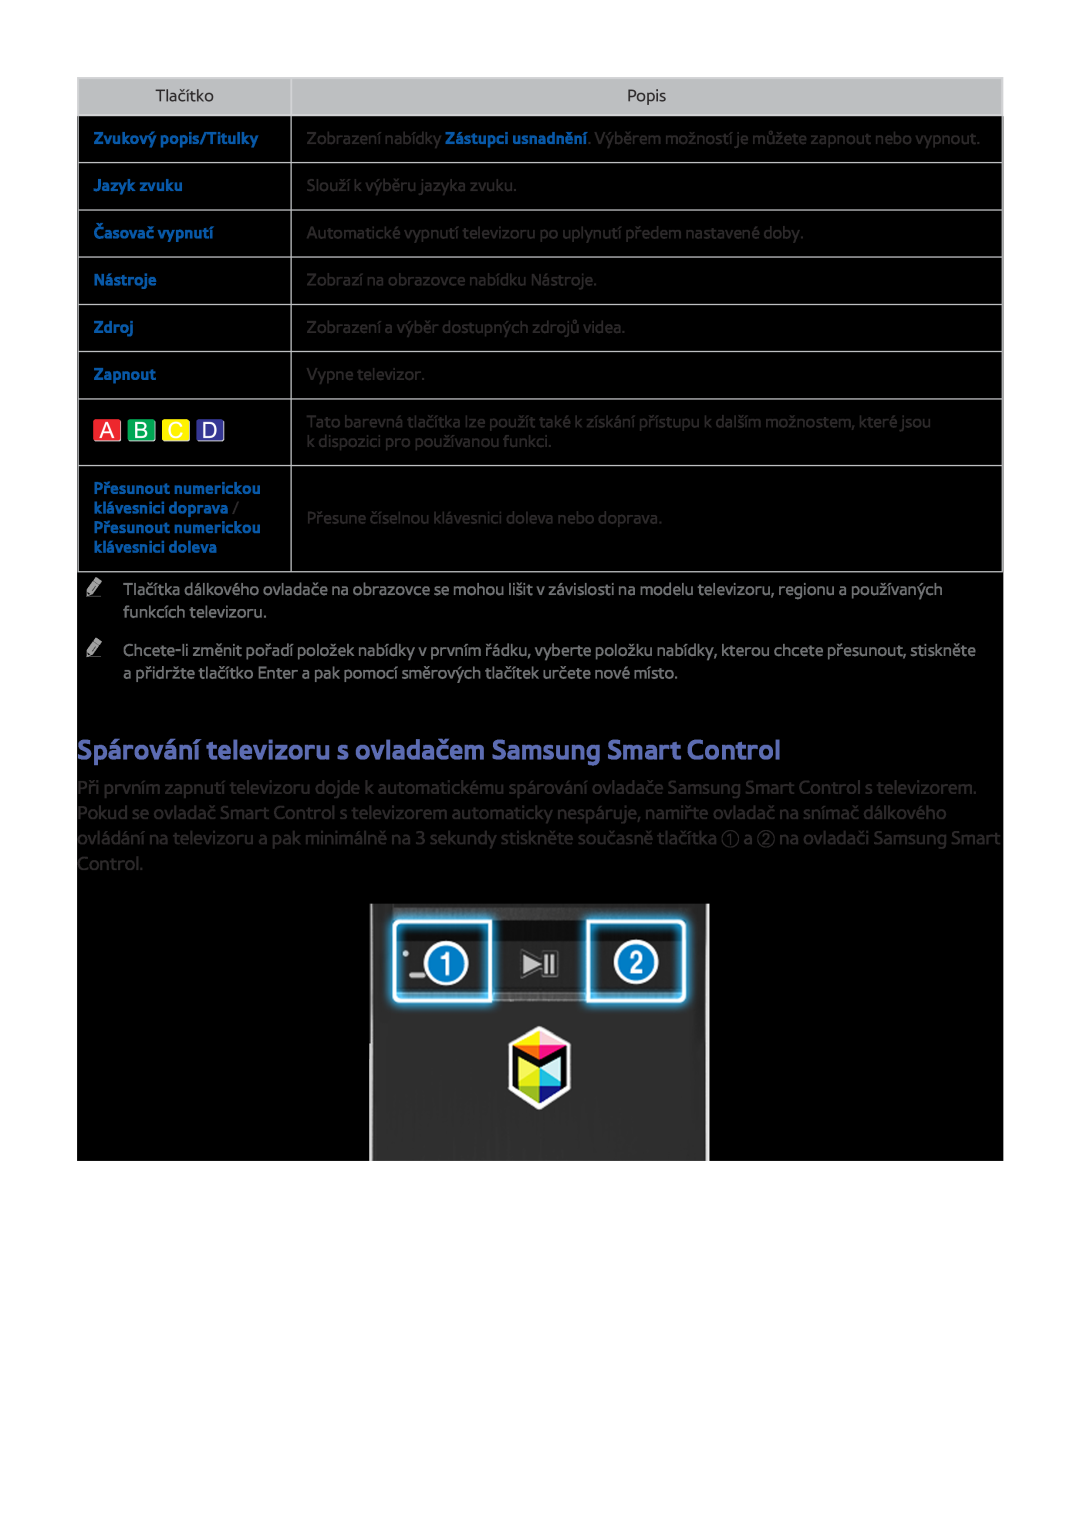 Samsung UE40J5500AWXXH Spárování televizoru s ovladačem Samsung Smart Control, Zvukový popis/Titulky, Jazyk zvuku, Zdroj 